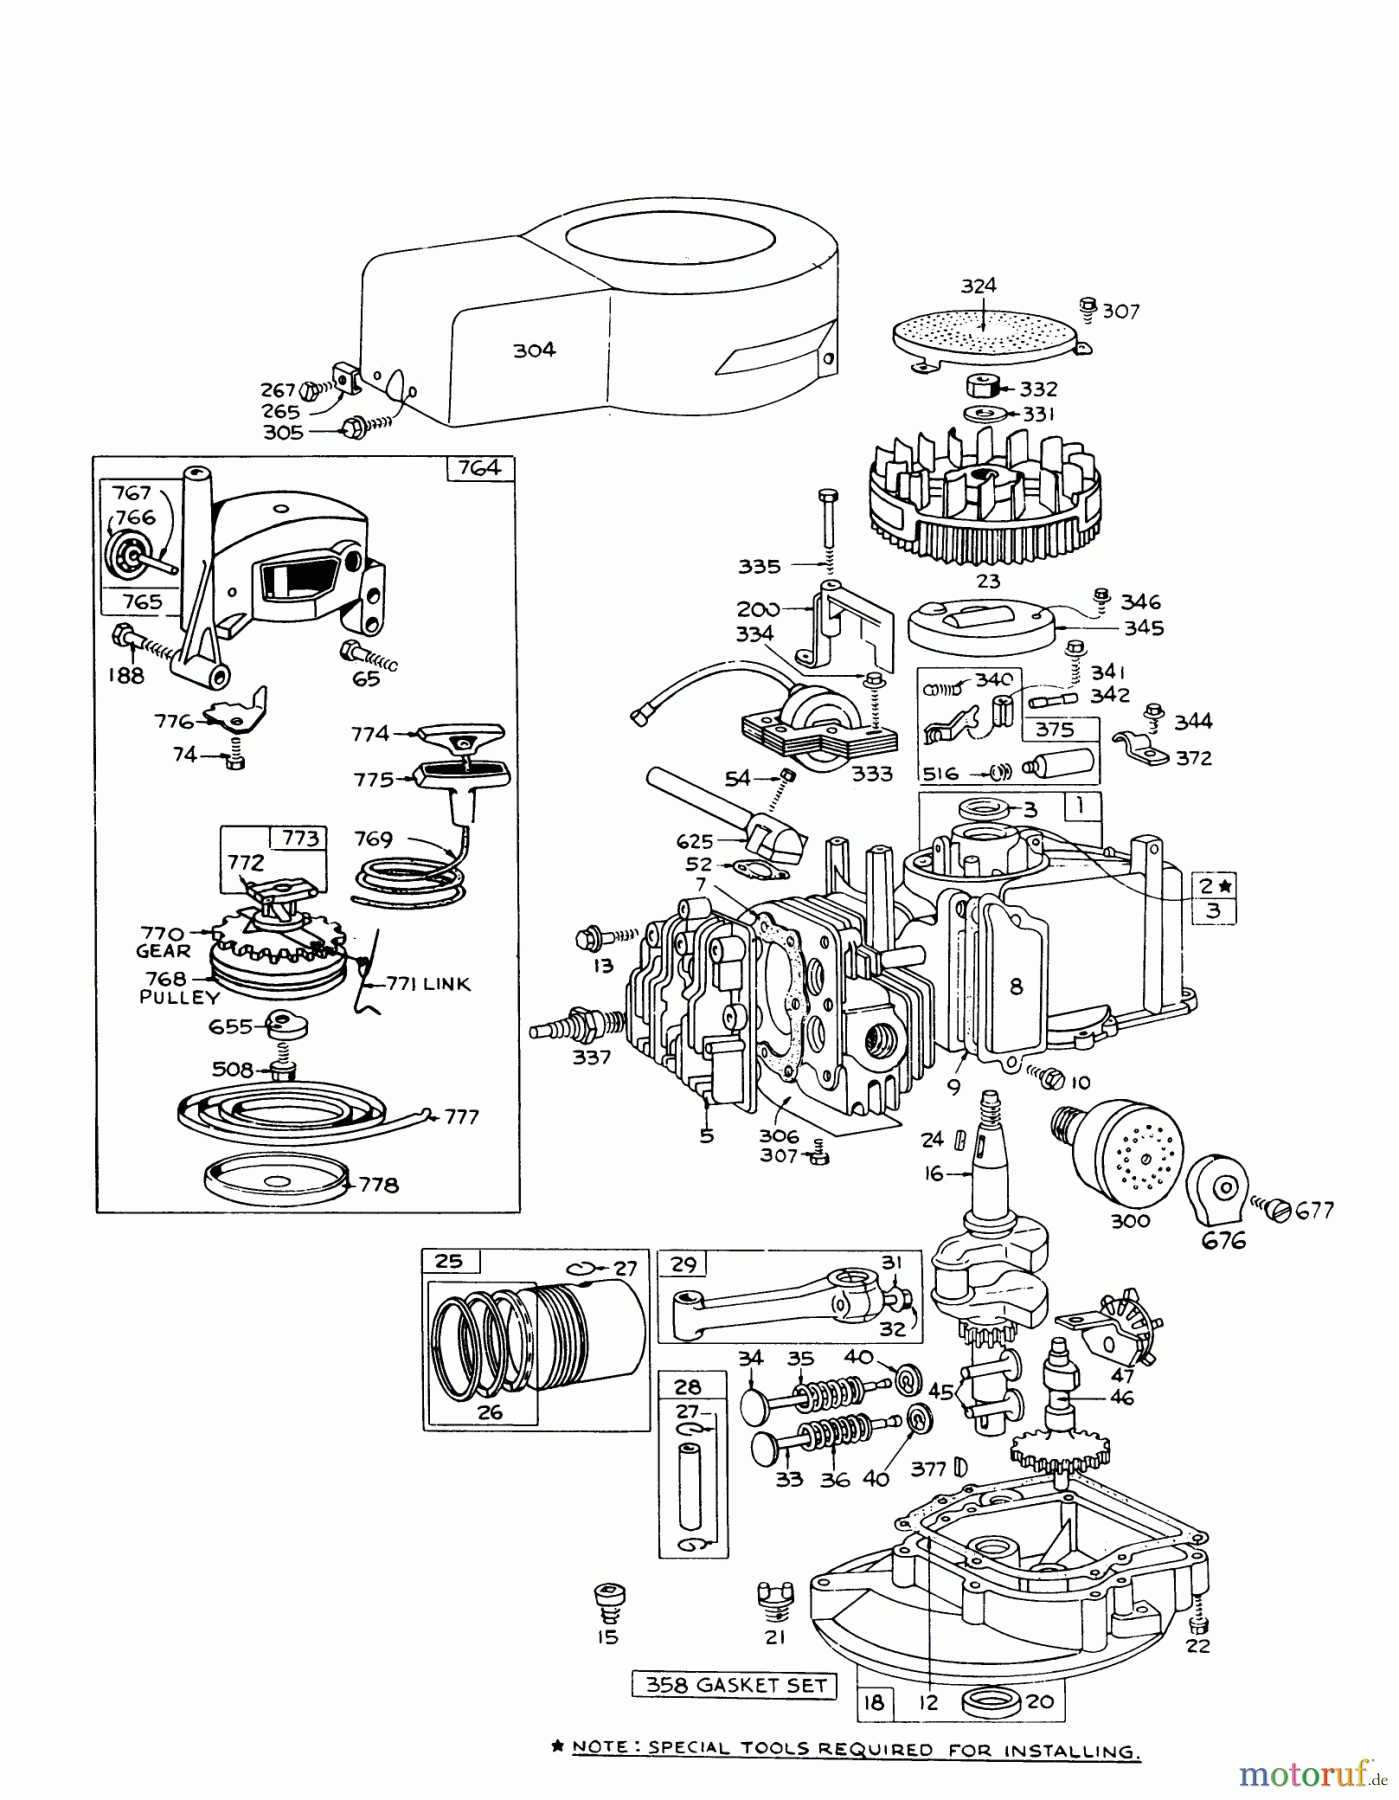  Toro Neu Mowers, Walk-Behind Seite 1 16155 - Toro Whirlwind II Lawnmower, 1977 (7000001-7999999) ENGINE BRIGGS & STRATTON MODEL 92508-0951-01 FOR 19